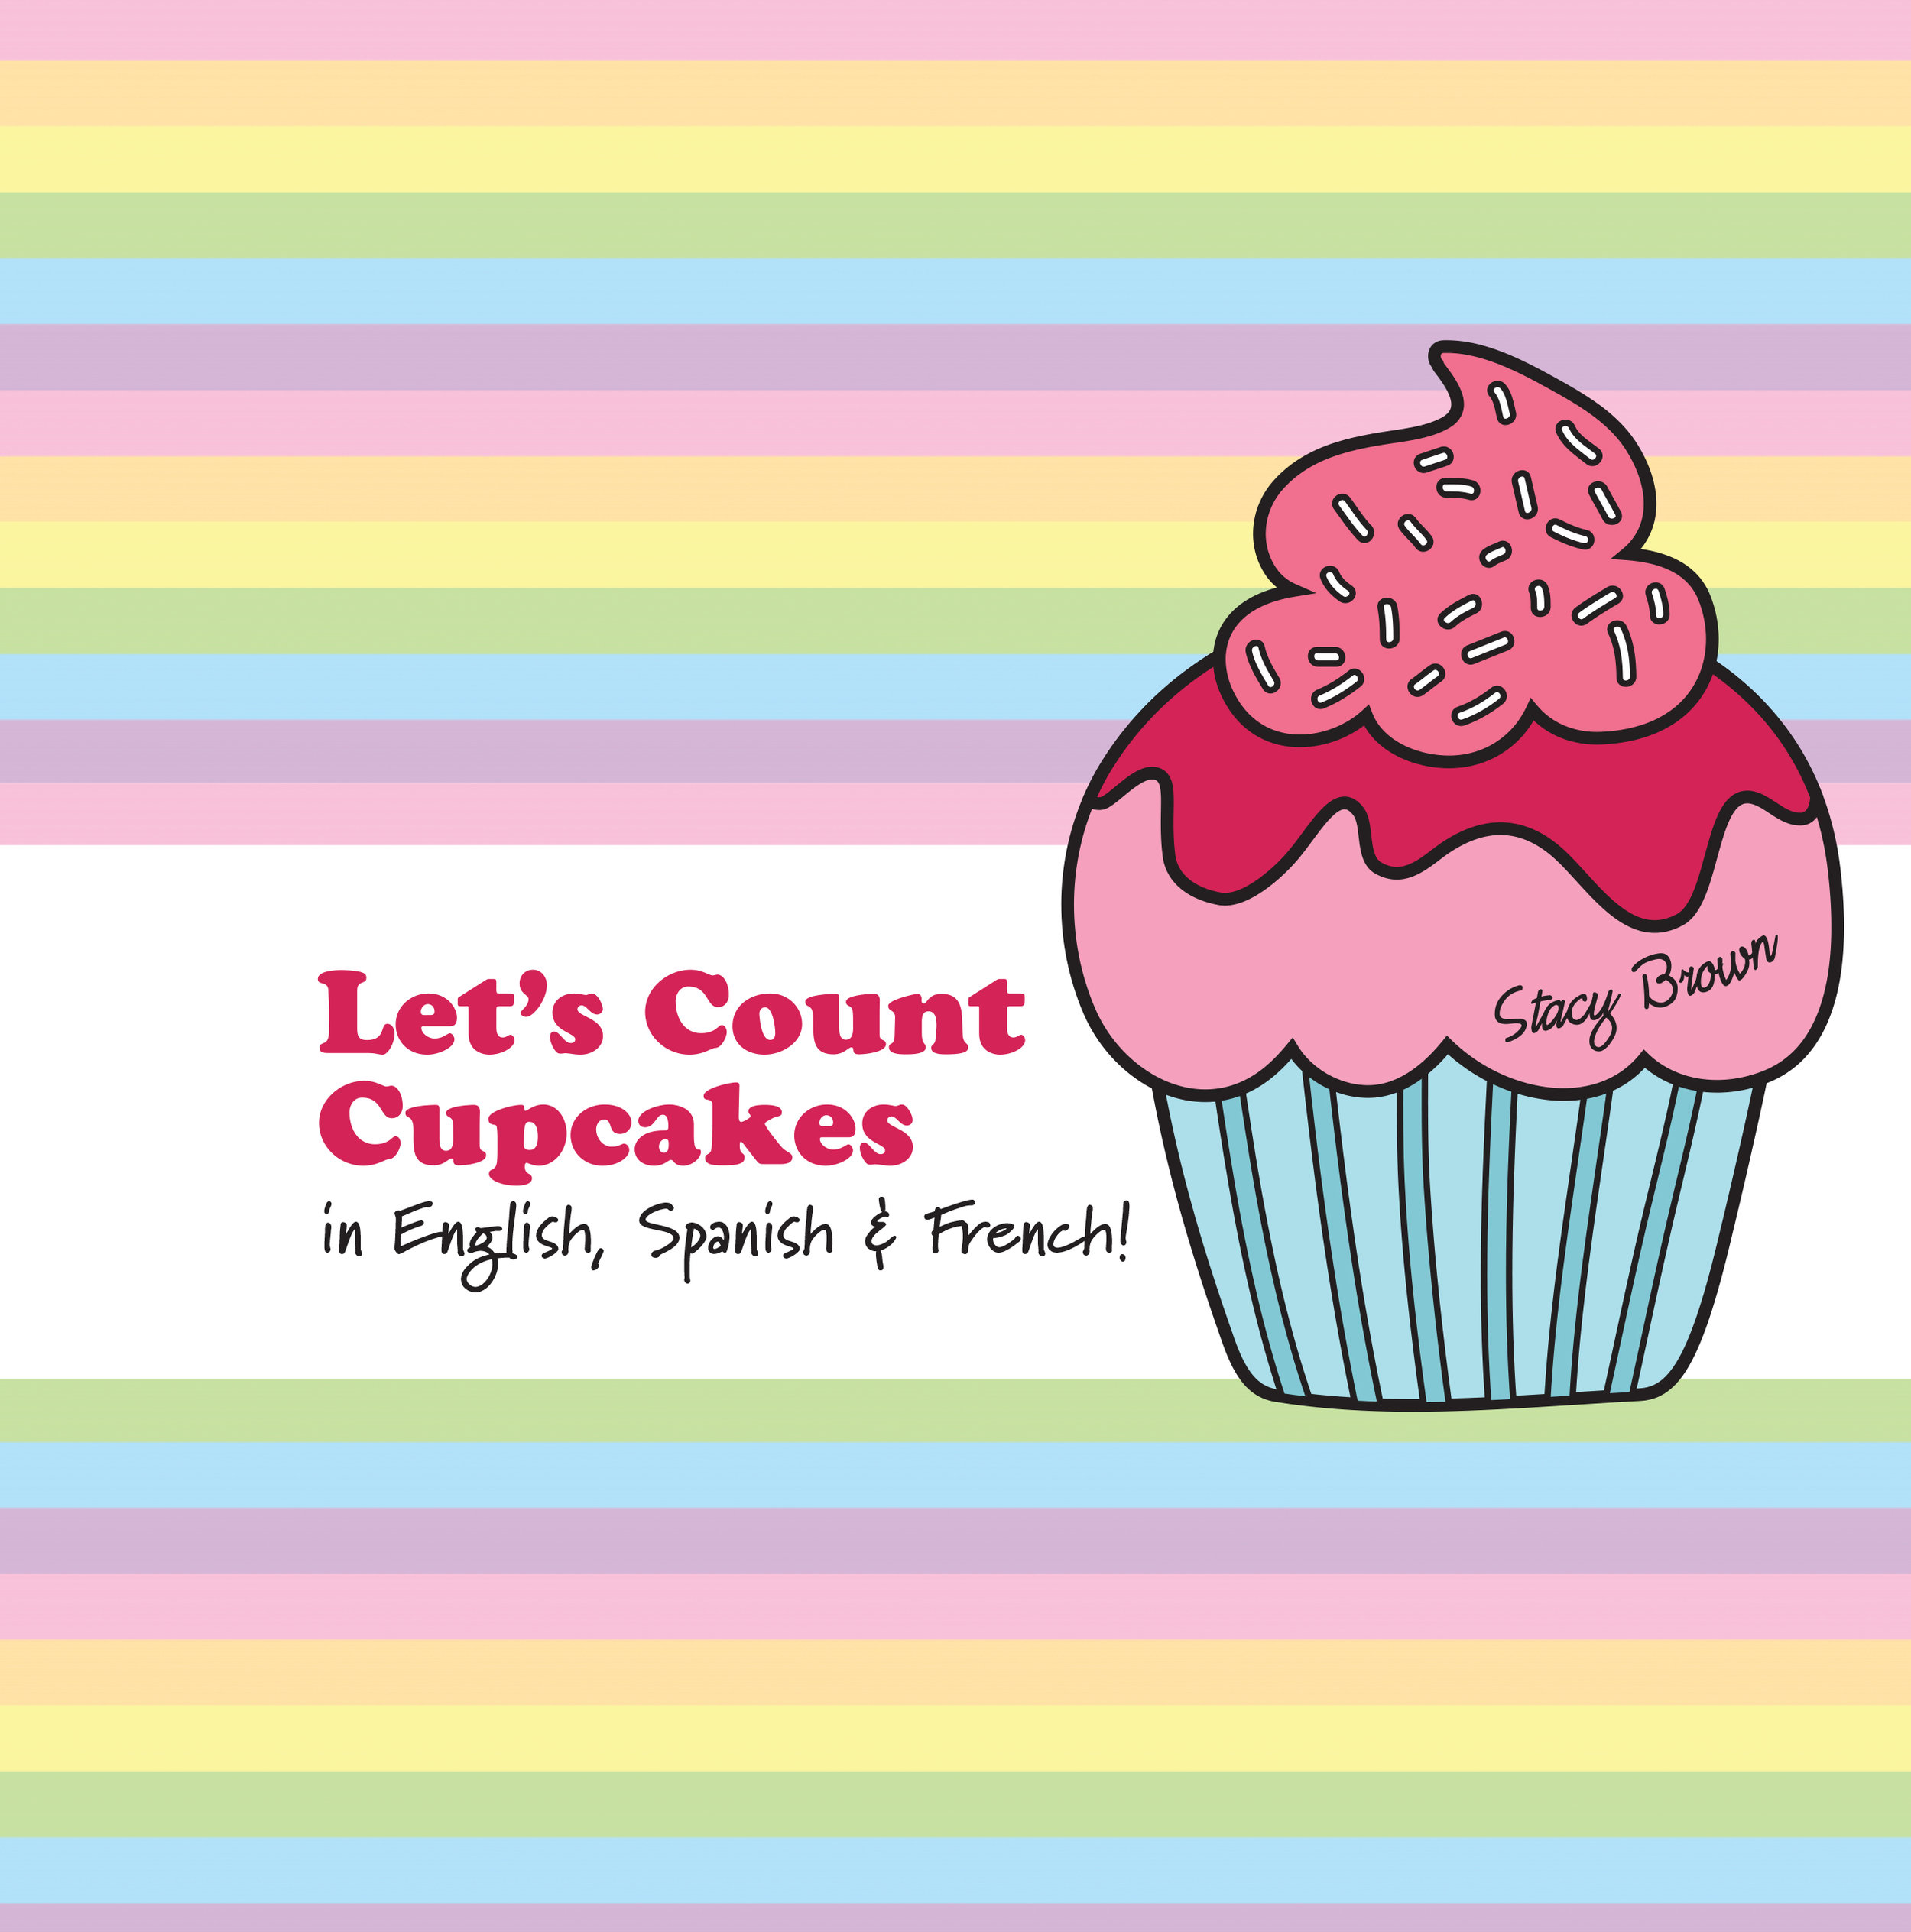 cupcake-multi-cover2.jpg